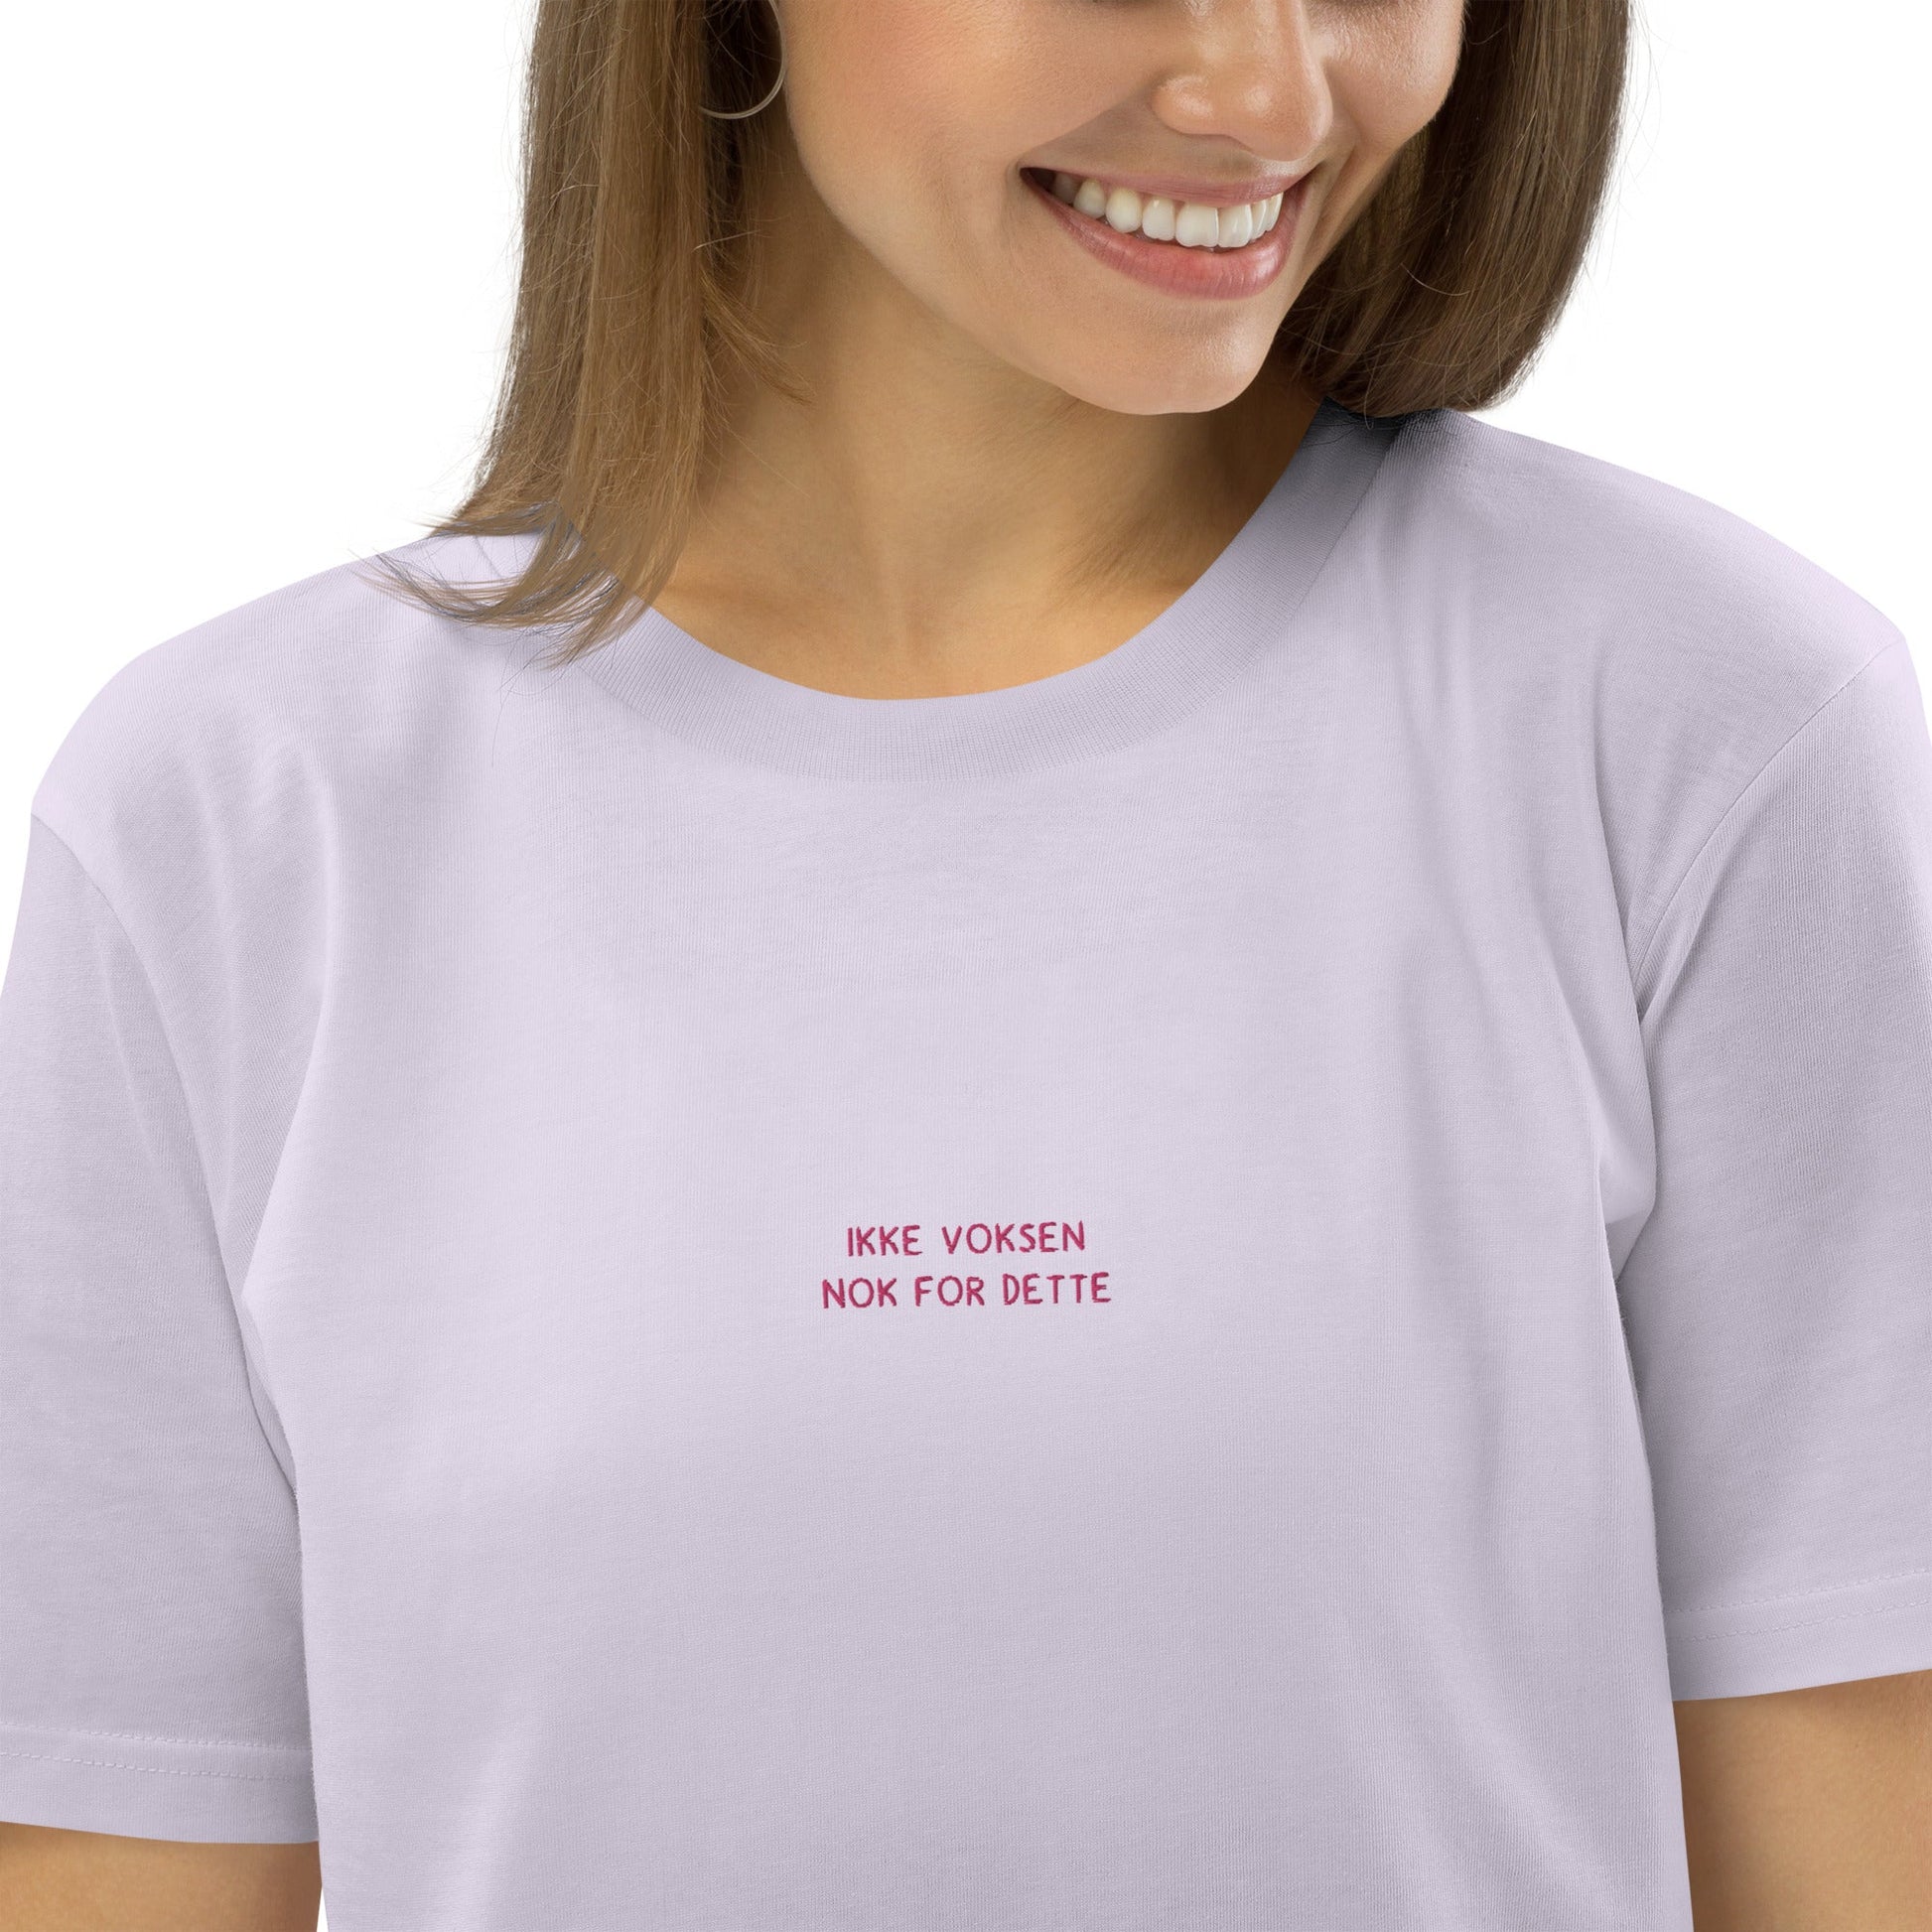 VAGPWR Lavender / S Ikke voksen - pink- Unisex eco t-shirt